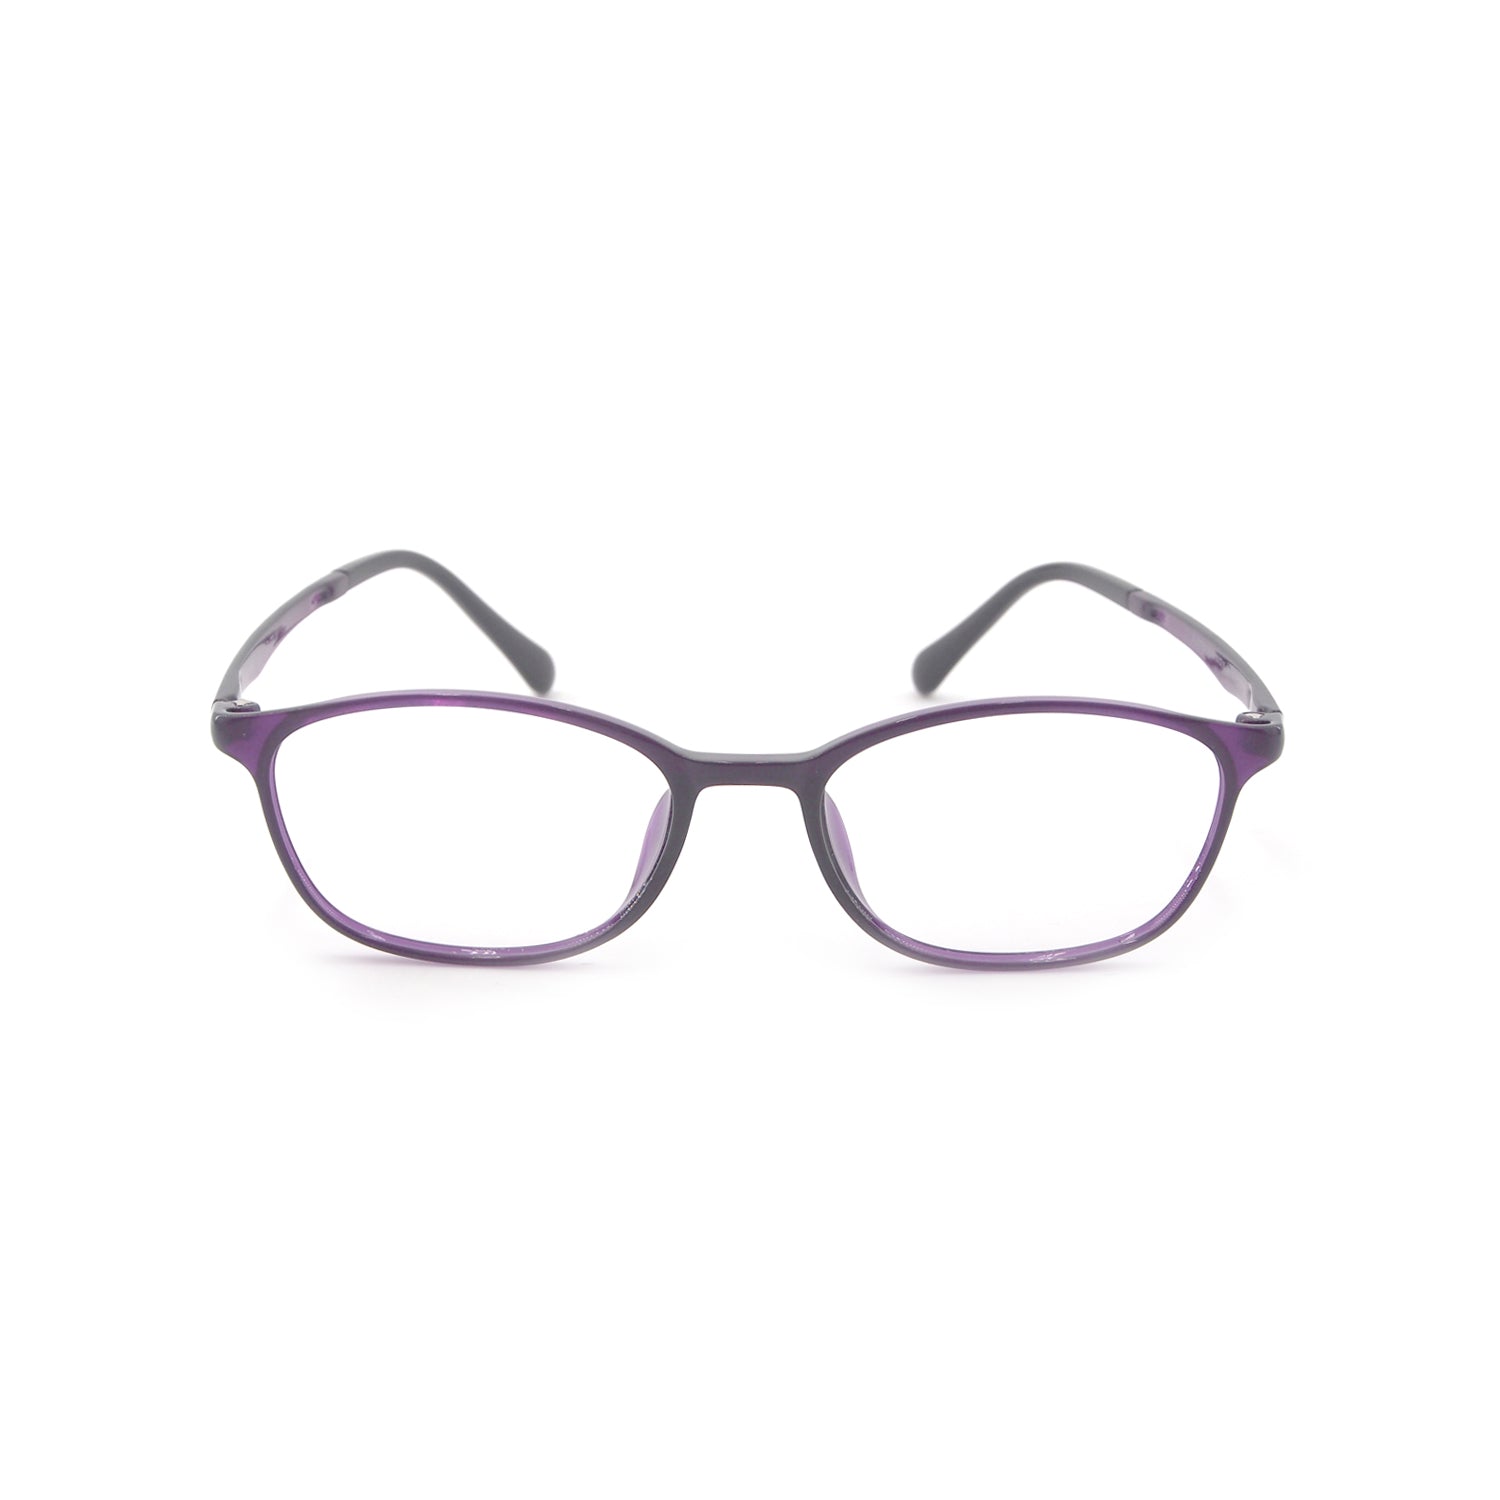 Awen in Bossanova Eyeglasses - sightonomy